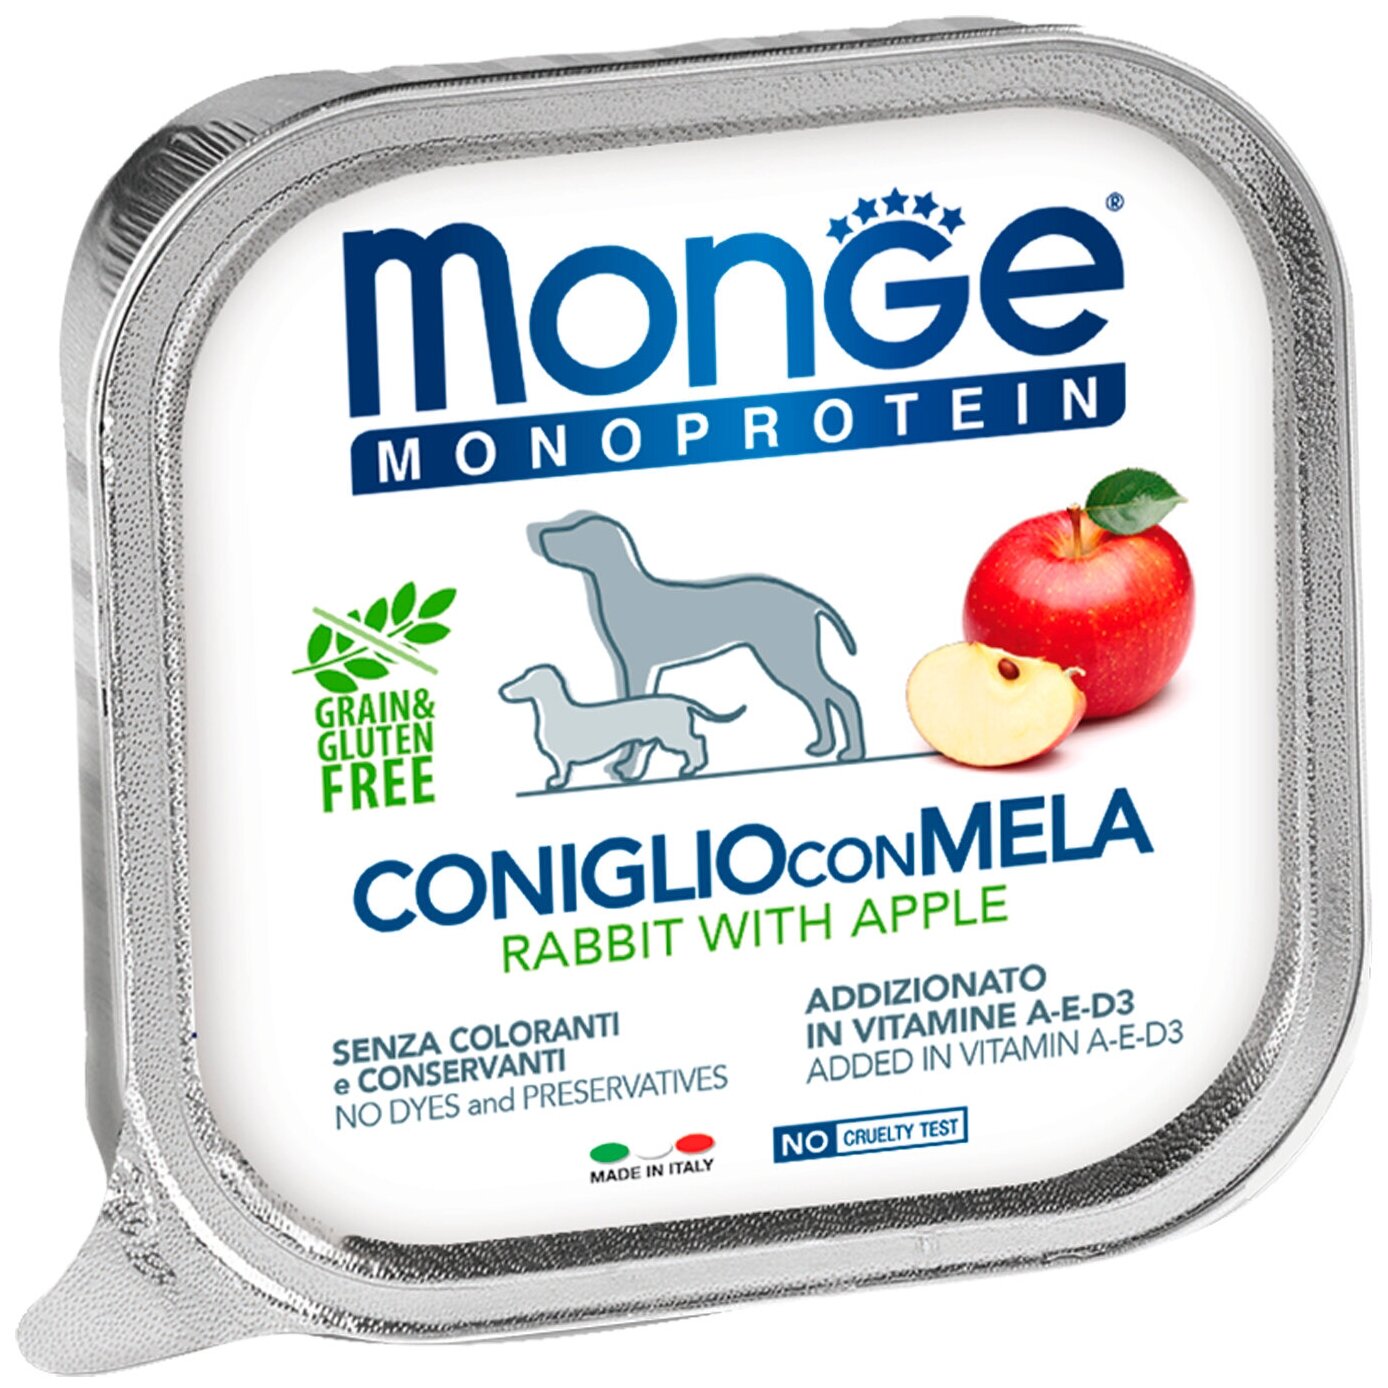 Влажный корм Monge Dog Natural Monoprotein Fruits для собак, паштет, кролик/яблоко, 150 г